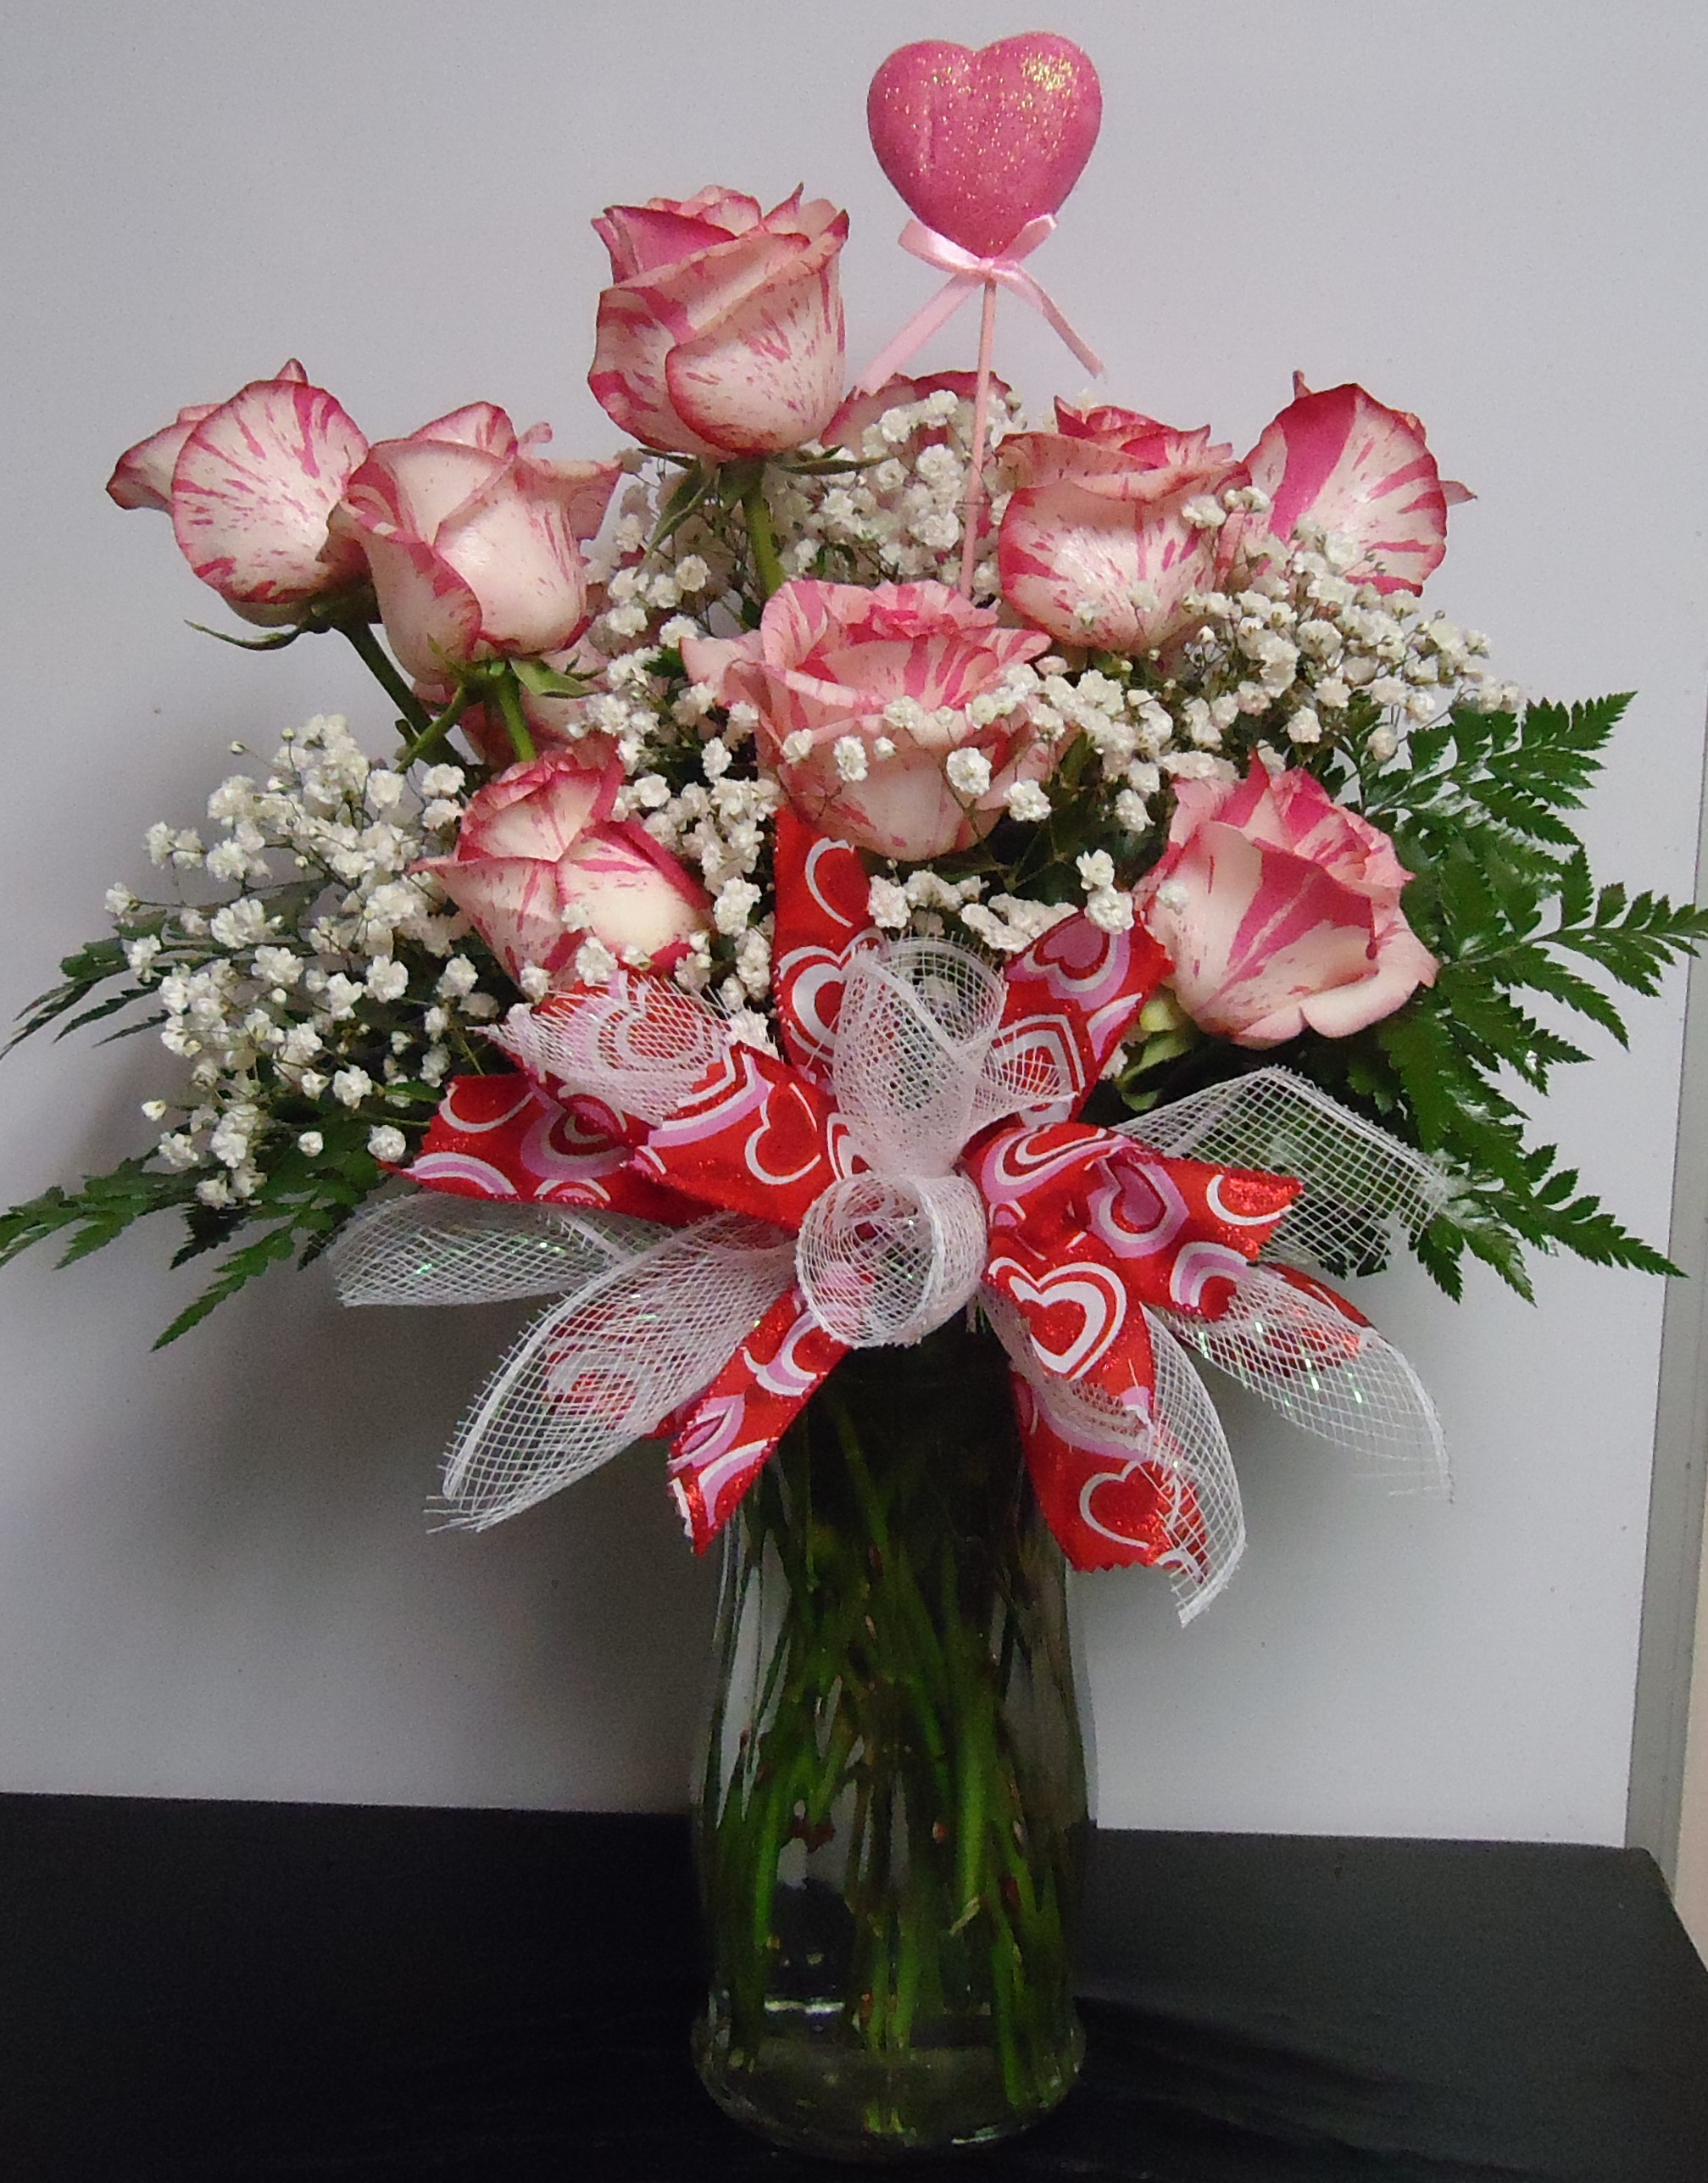 (5) "Dozen" Pink Roses
$75.00